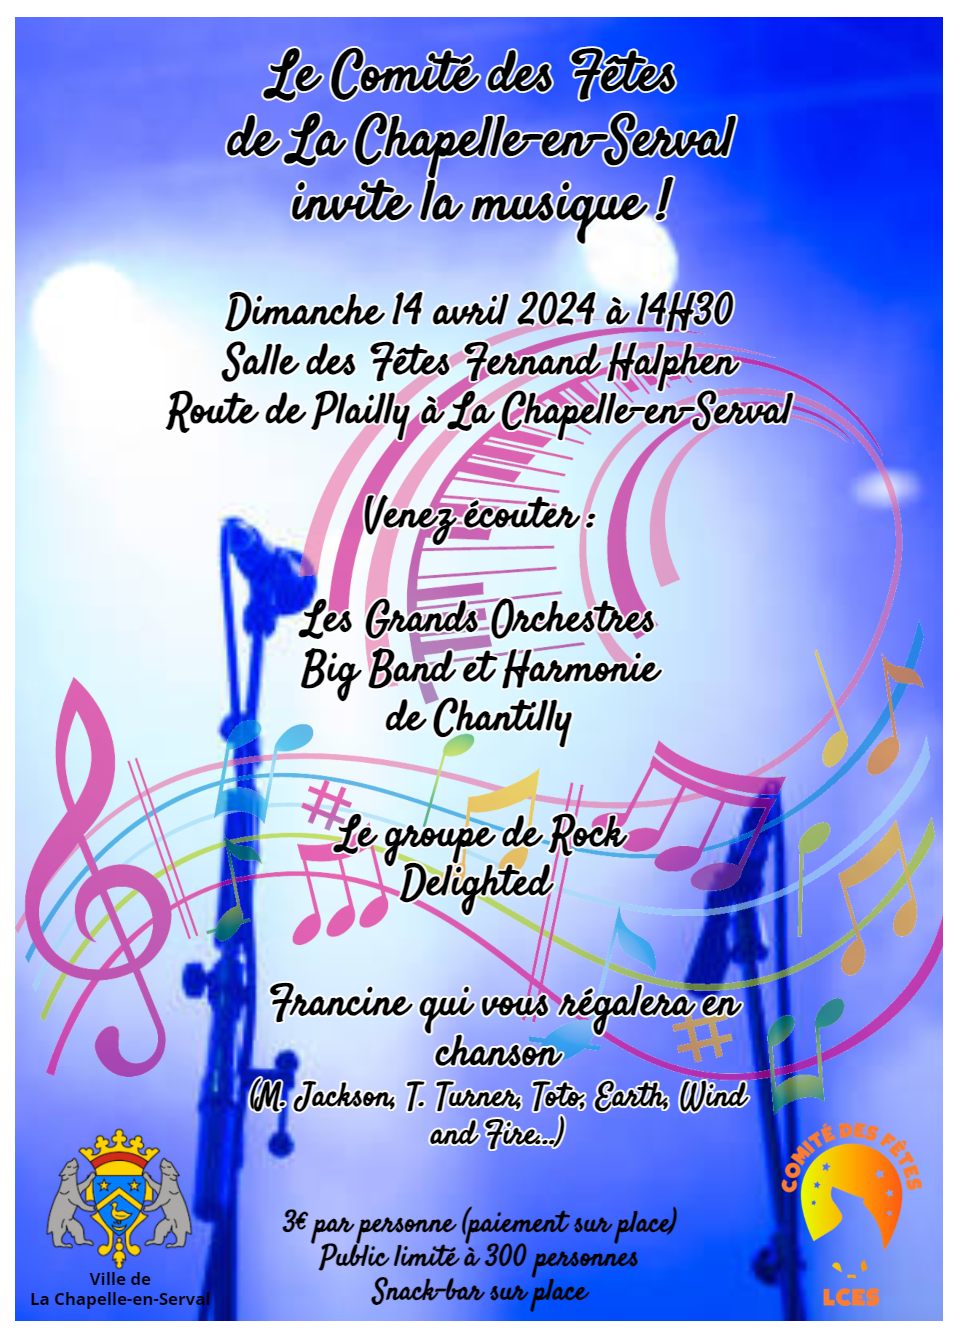 Le comité des fêtes de la Chapelle-en-Serval invite la musique !